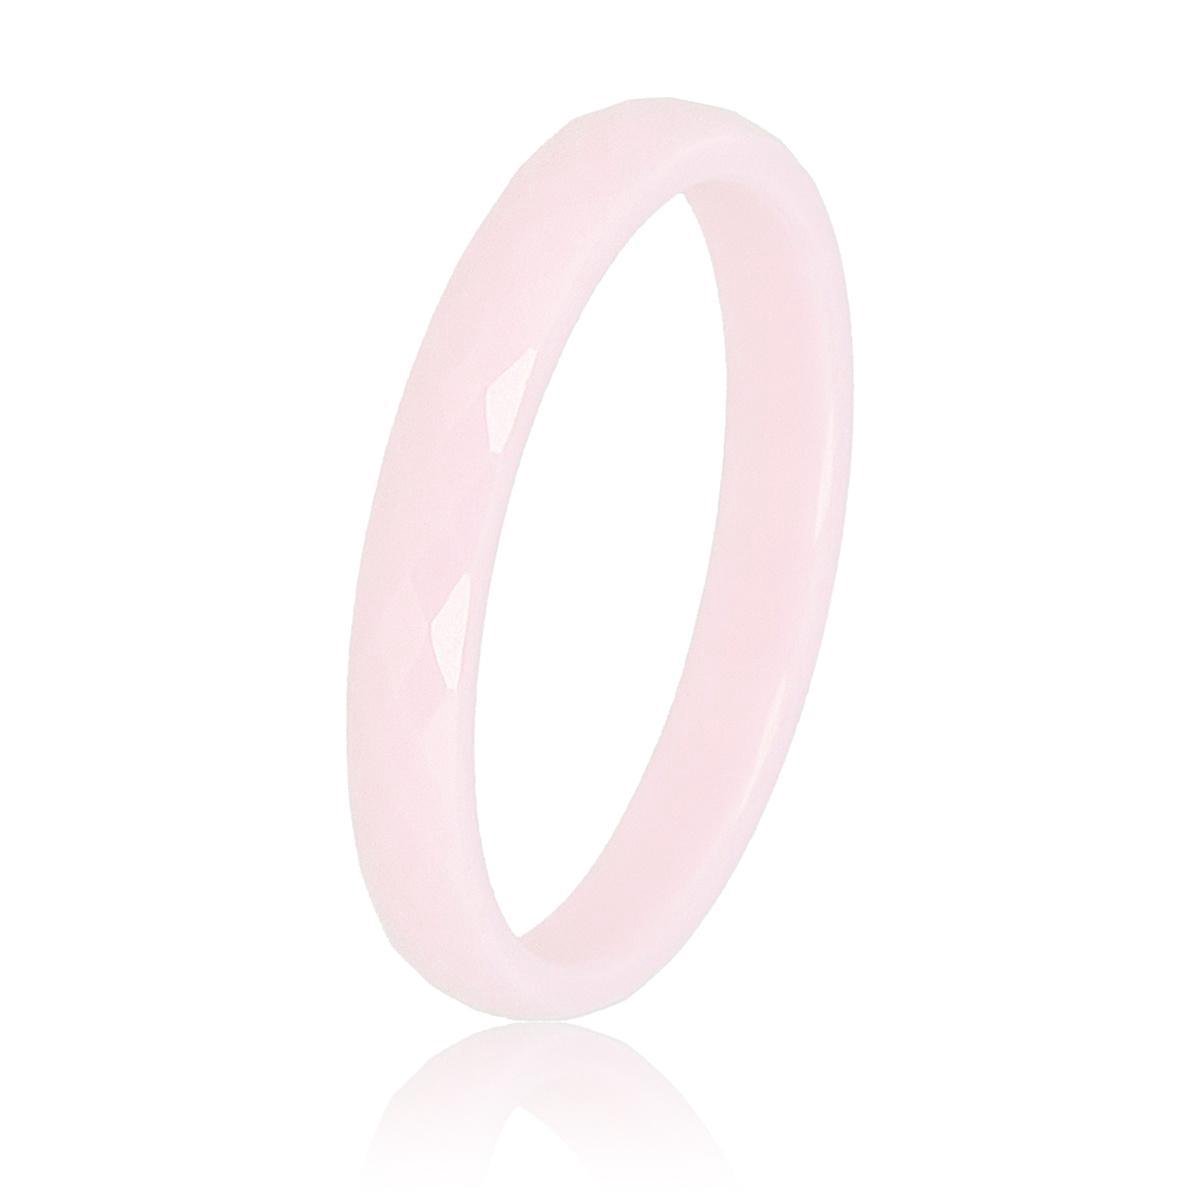 My Bendel - Keramieken ring facet geslepen roze 3mm - Keramische, onbreekbare, mooie roze ring - Verkleurt niet - Met luxe cadeauverpakking